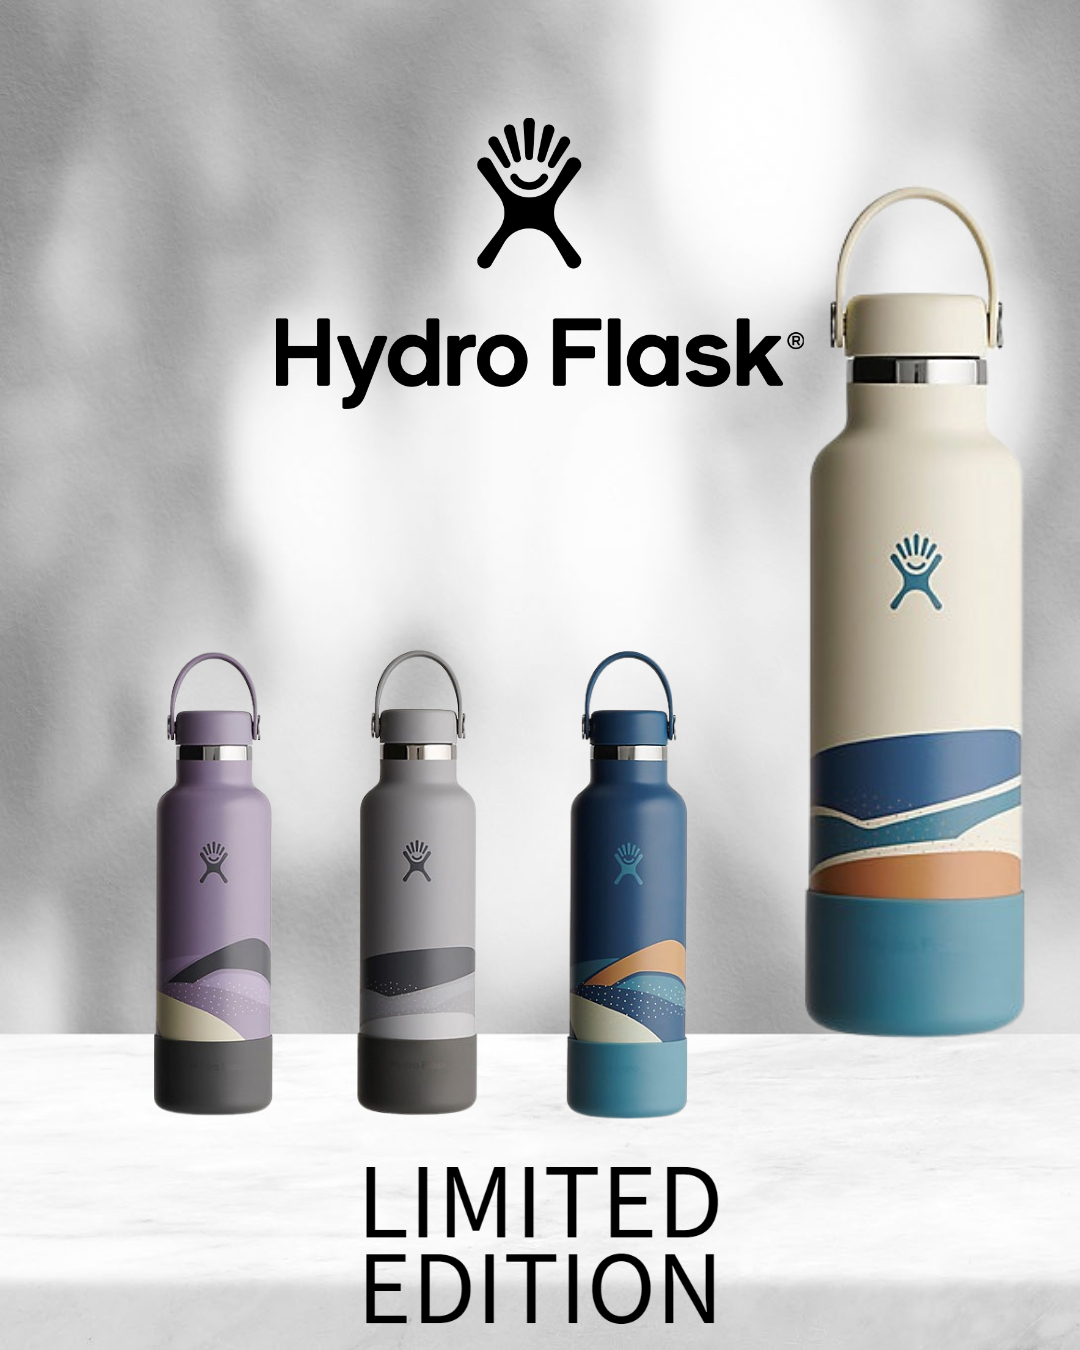 ╲販路限定デザイン☆／Hydro Flask®(ハイドロフラスク)の限定ボトルを